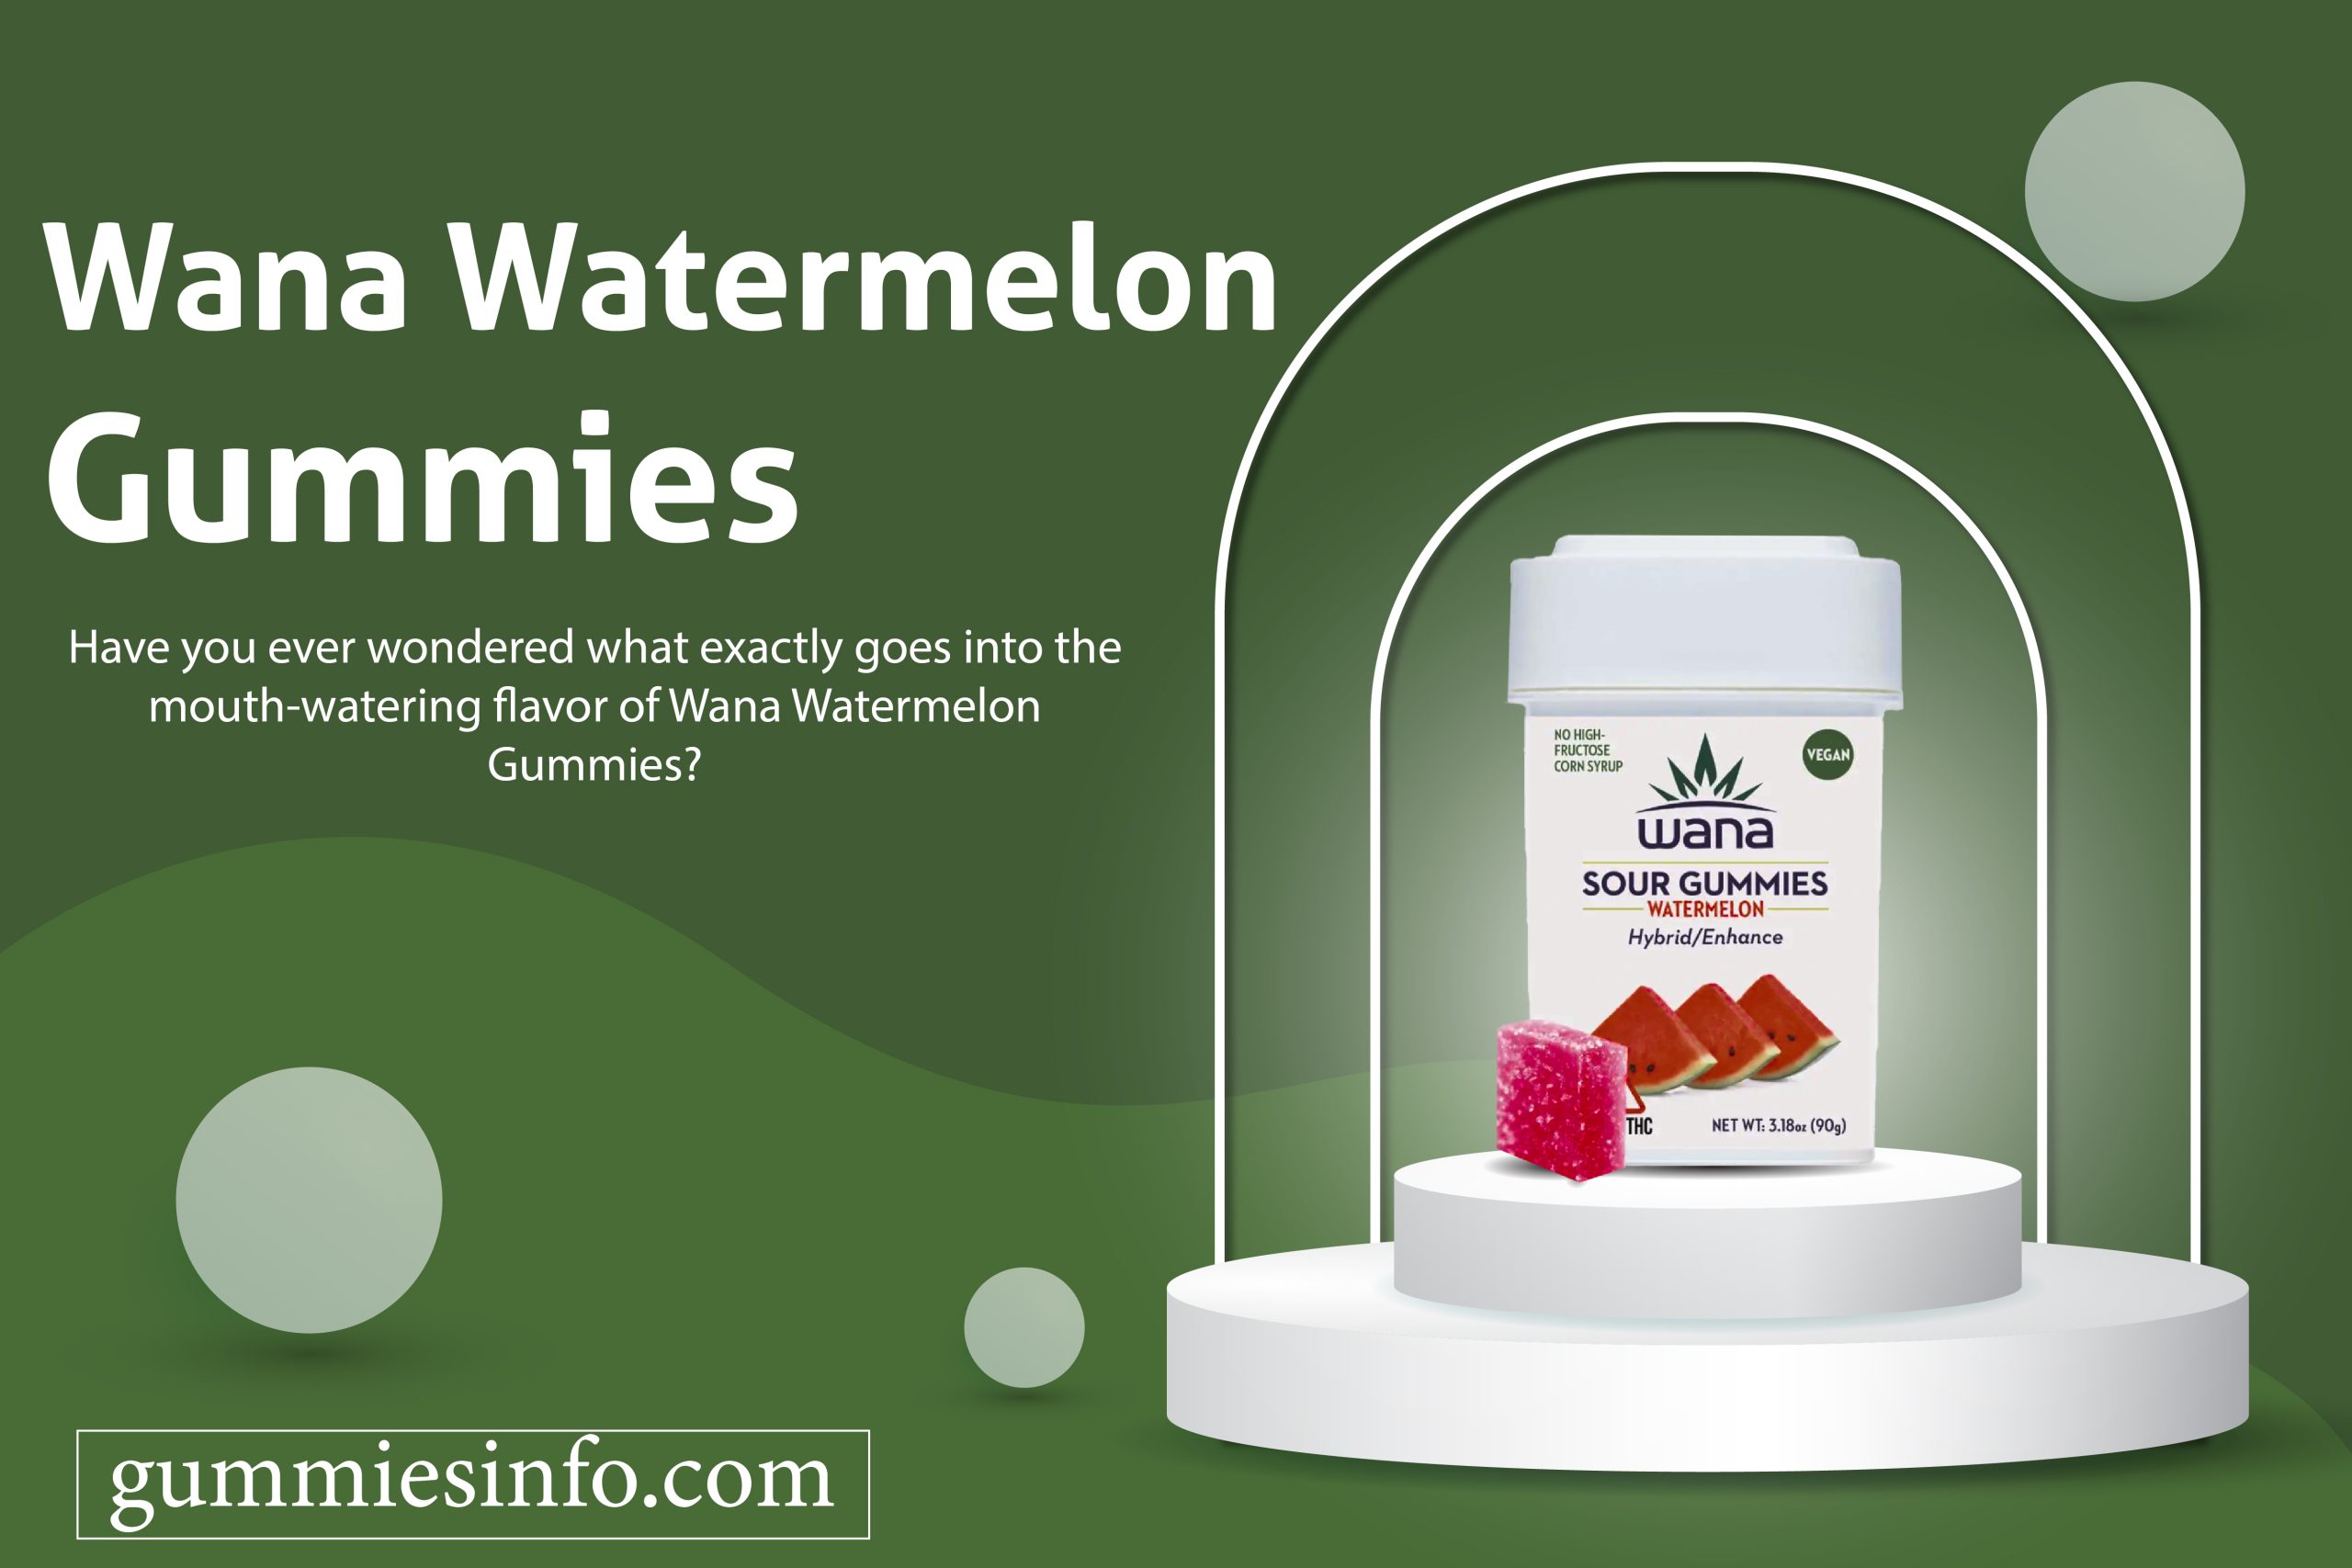 Wana Watermelon Gummies